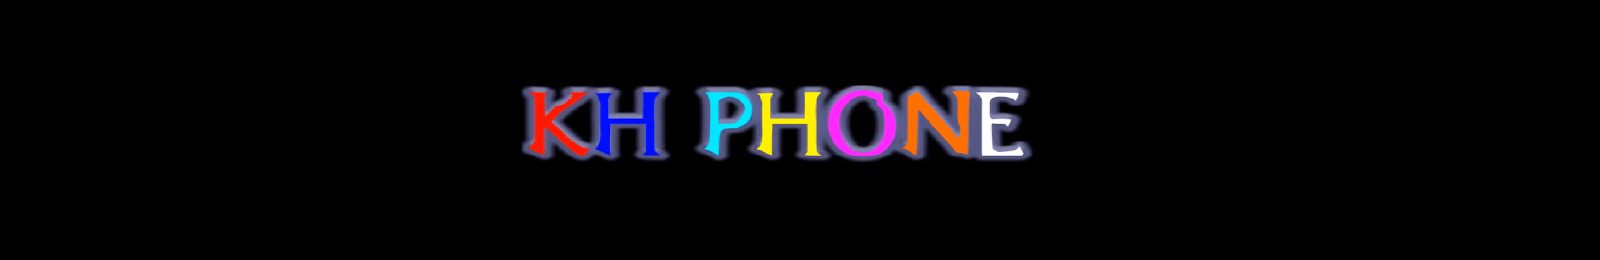 KH PHONE